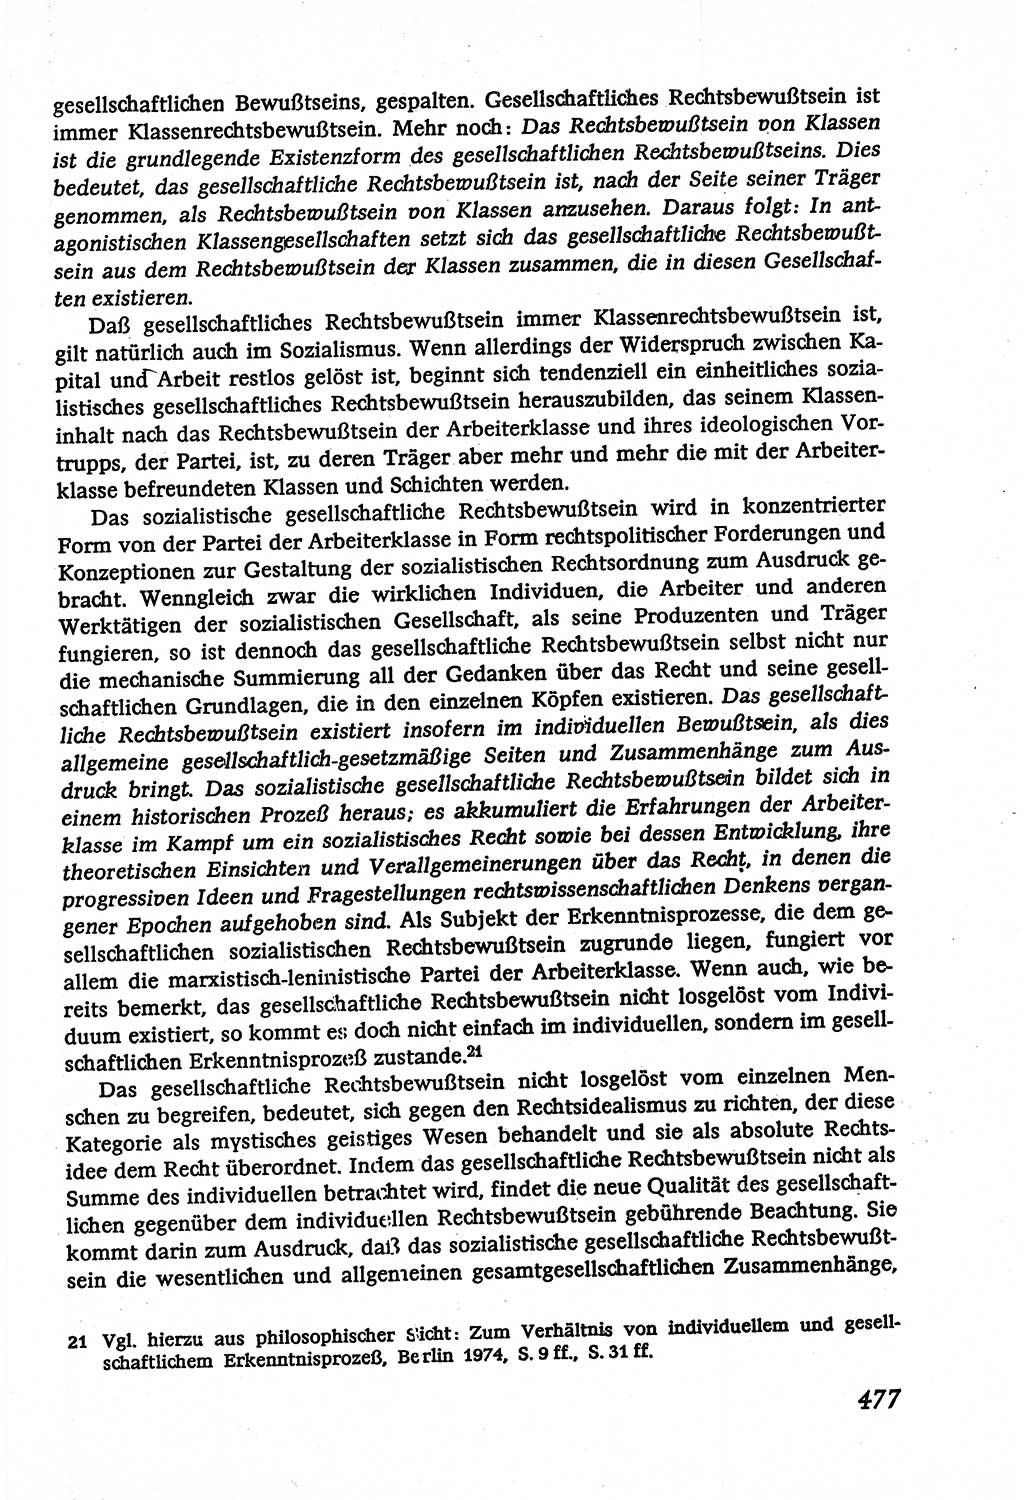 Marxistisch-leninistische (ML) Staats- und Rechtstheorie [Deutsche Demokratische Republik (DDR)], Lehrbuch 1980, Seite 477 (ML St.-R.-Th. DDR Lb. 1980, S. 477)